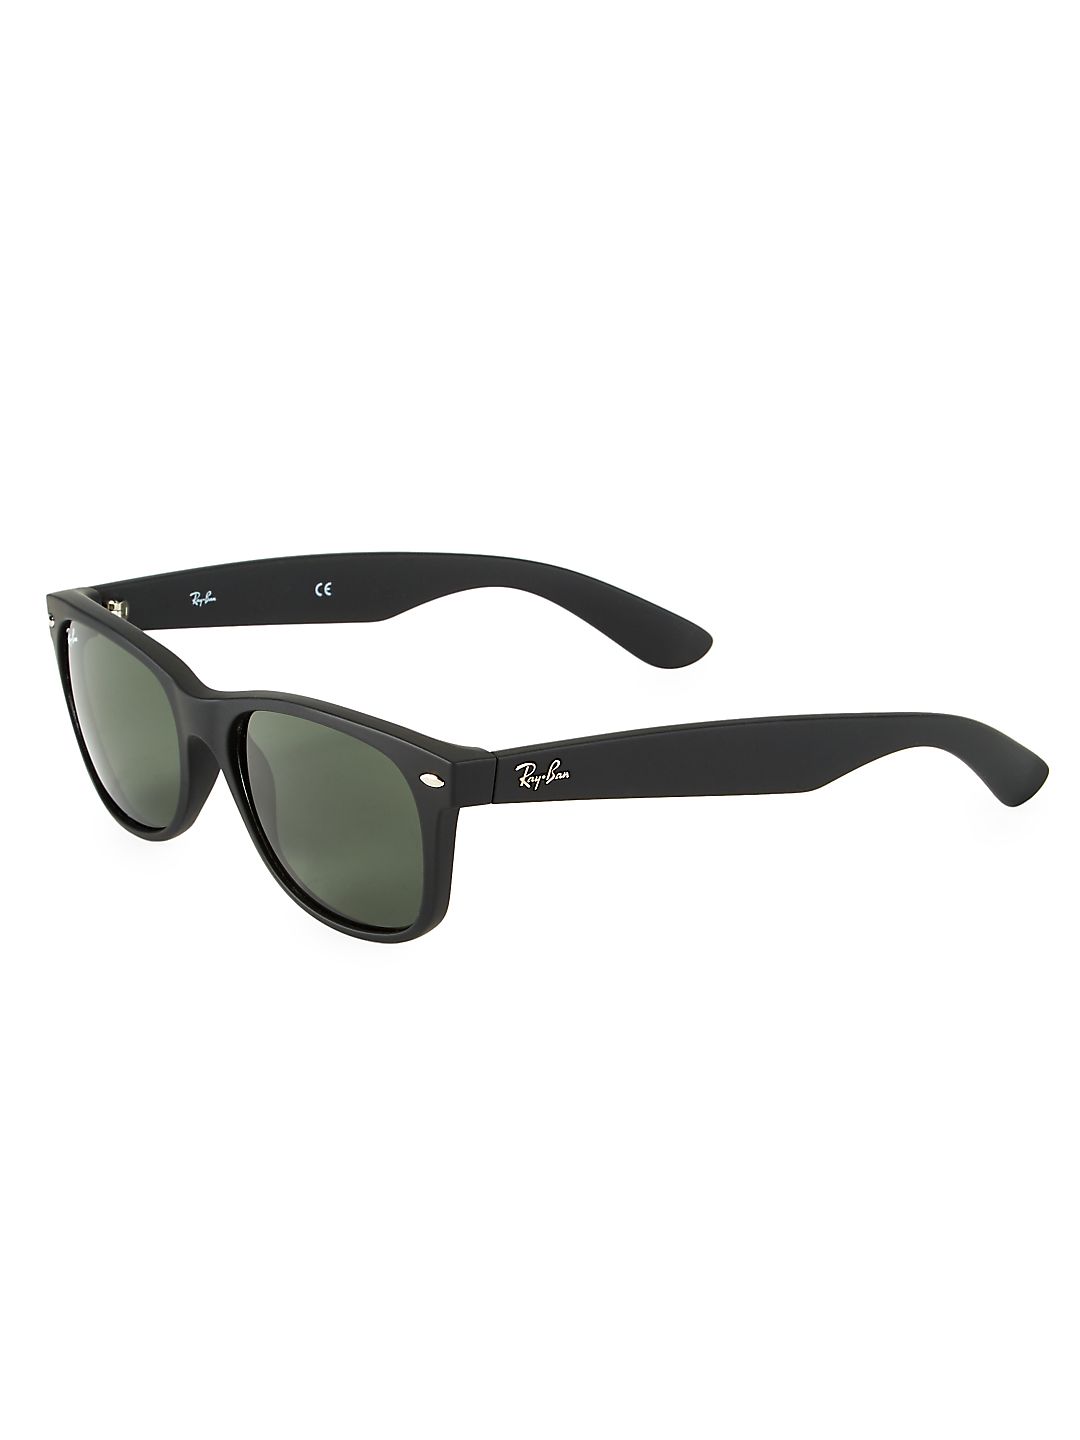 55MM RB2132 New Classic Wayfarer Sunglasses - image 2 of 3